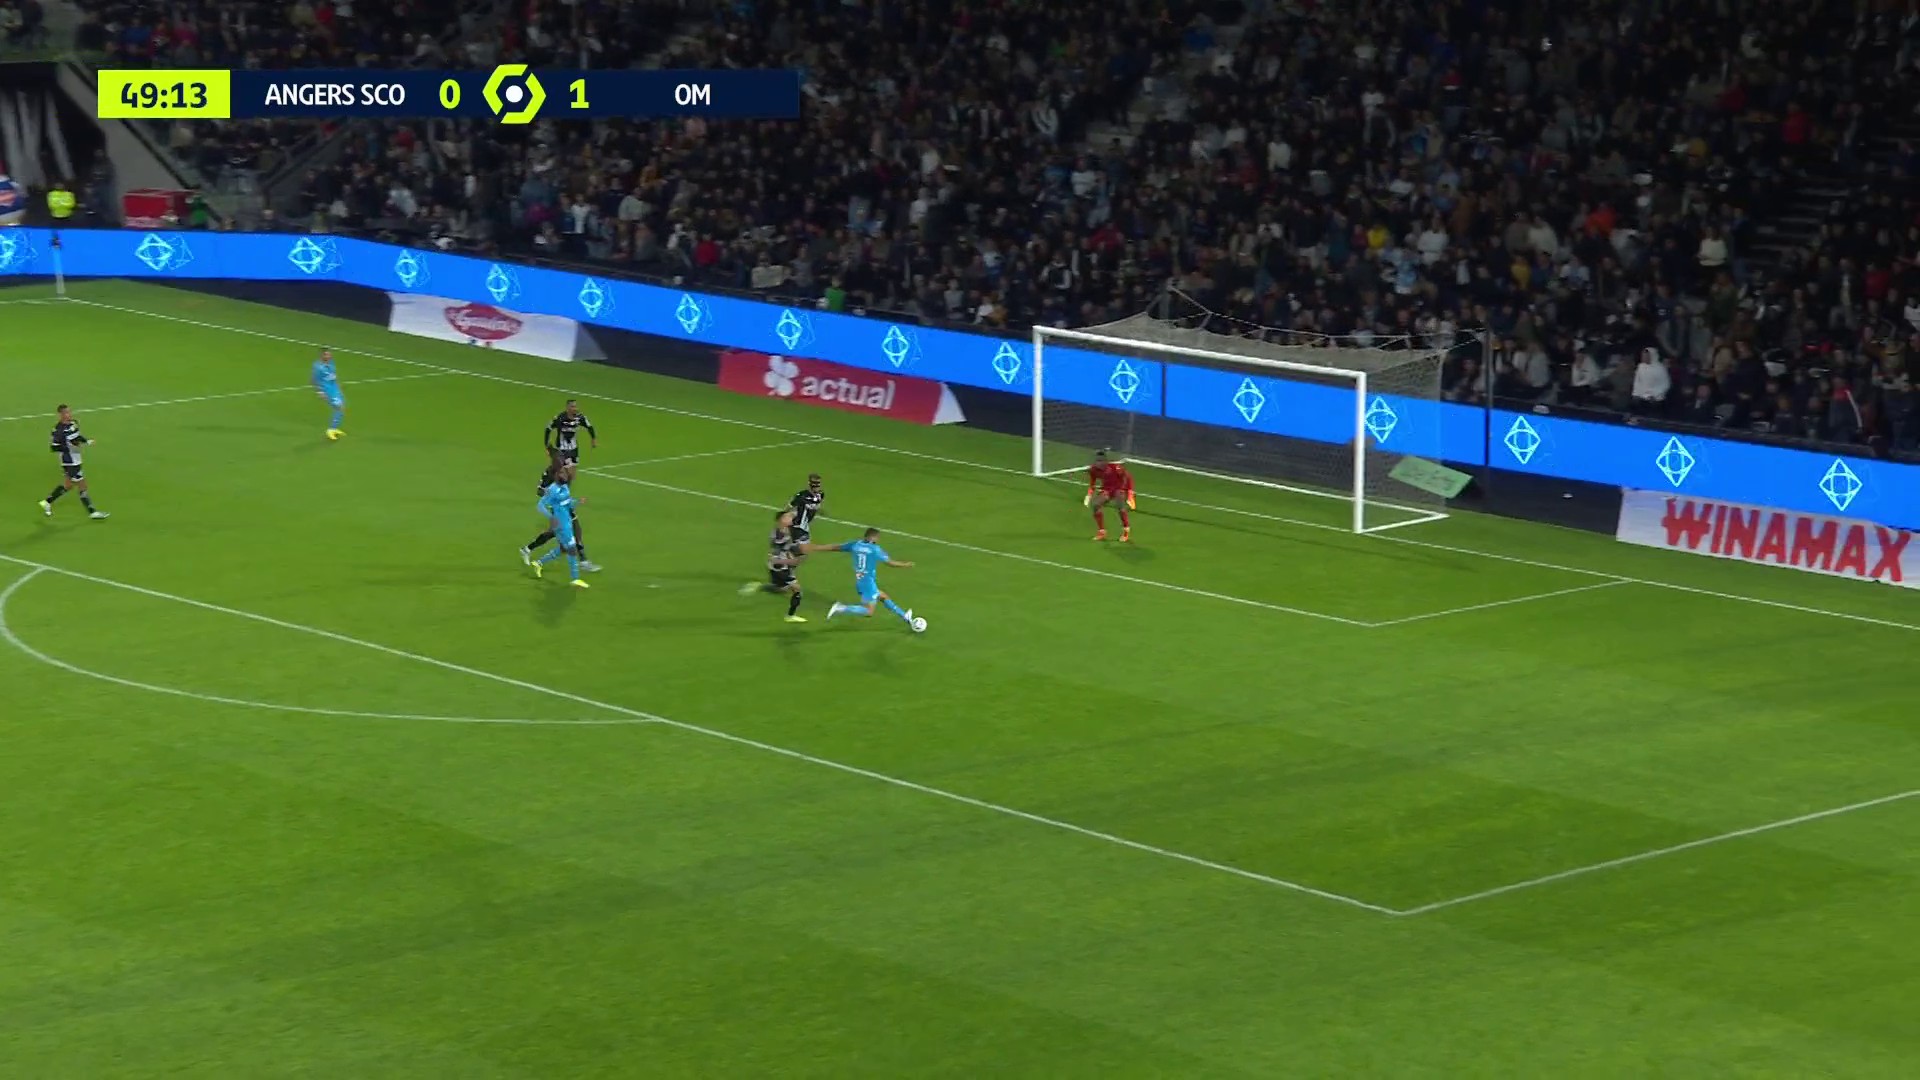 Jonathan Clauss à la passe, Luis Suarez double la mise pour l’OM contre Angers (VIDEO)